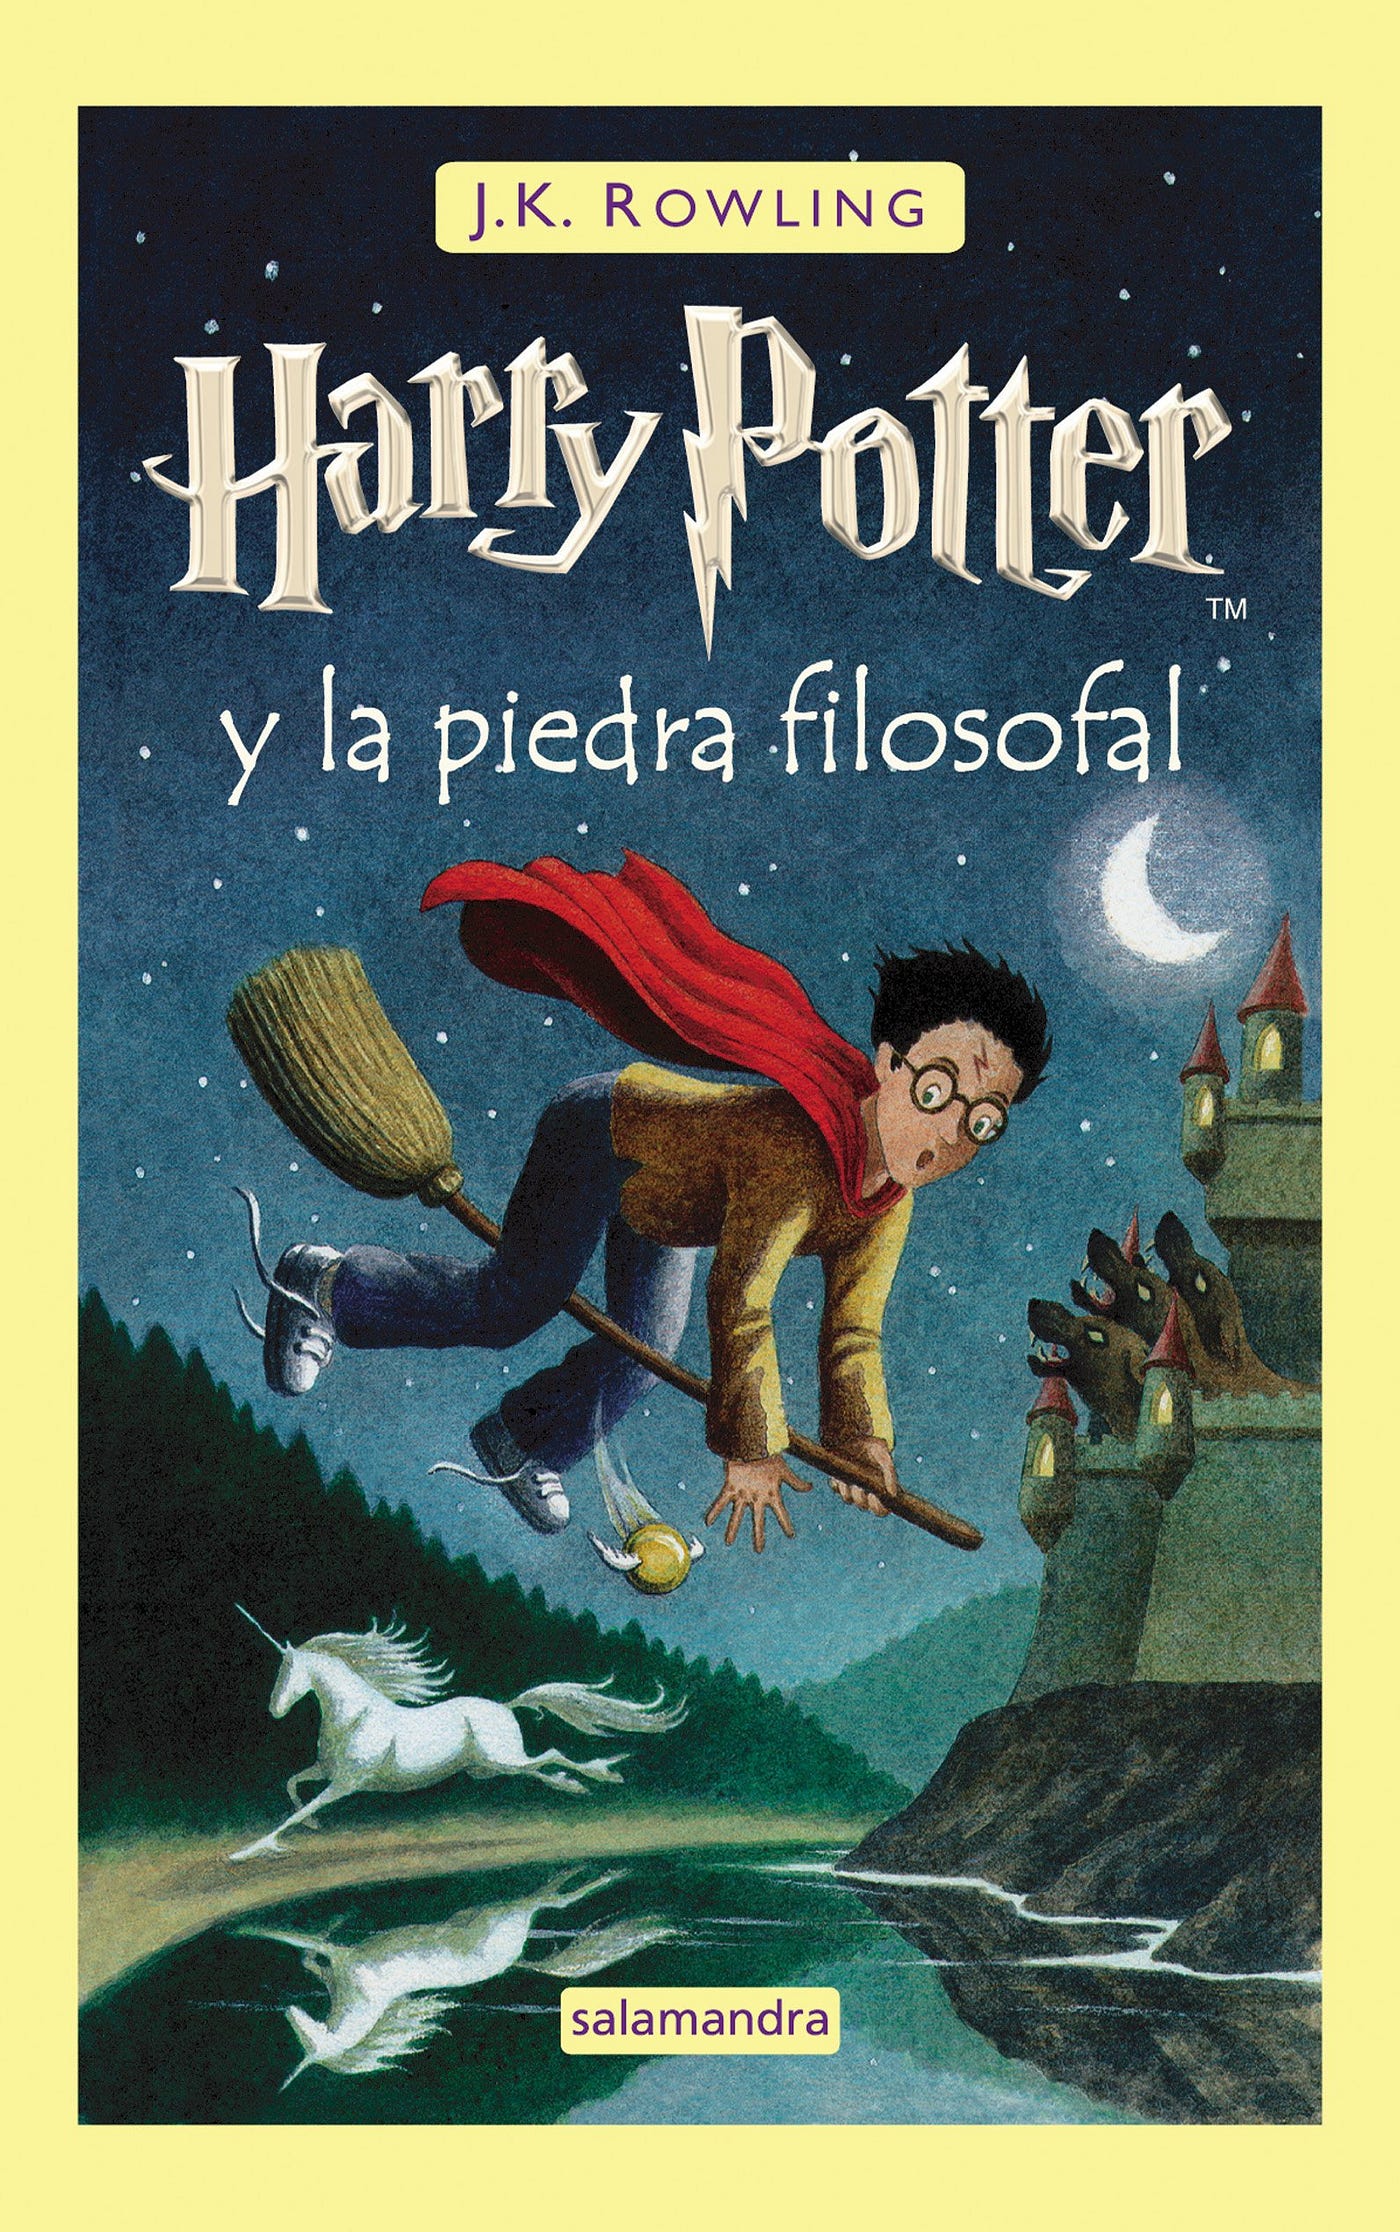 Furor y caos por adquirir en España el libro de fantasía 'Alas de hierro',  un fenómeno comparable a 'Harry Potter